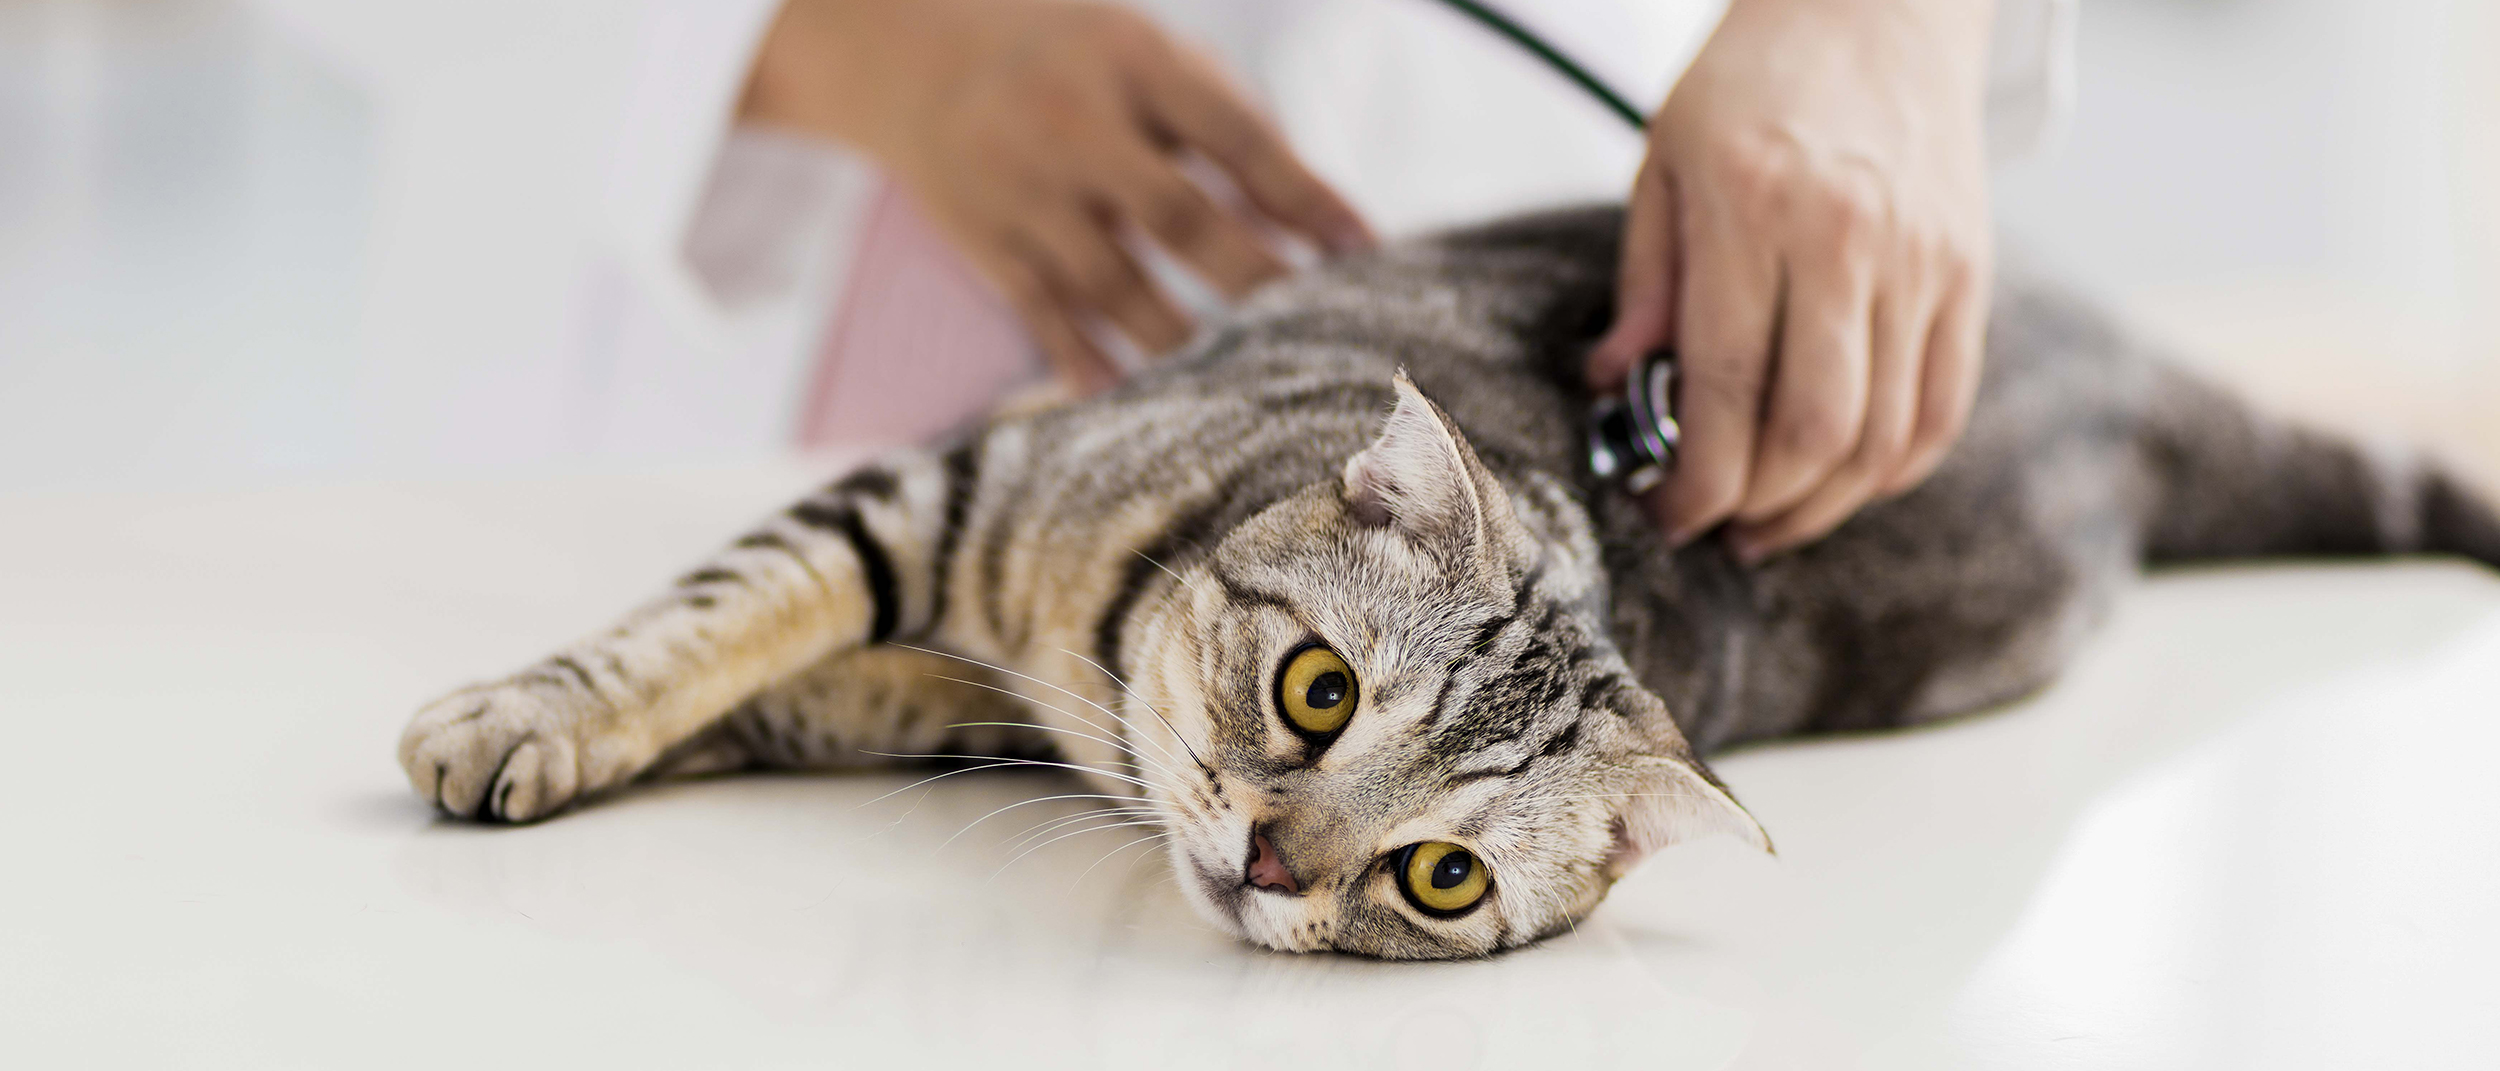 Ветеринарный врач осматривает котенка, который лежит на смотровом столе.